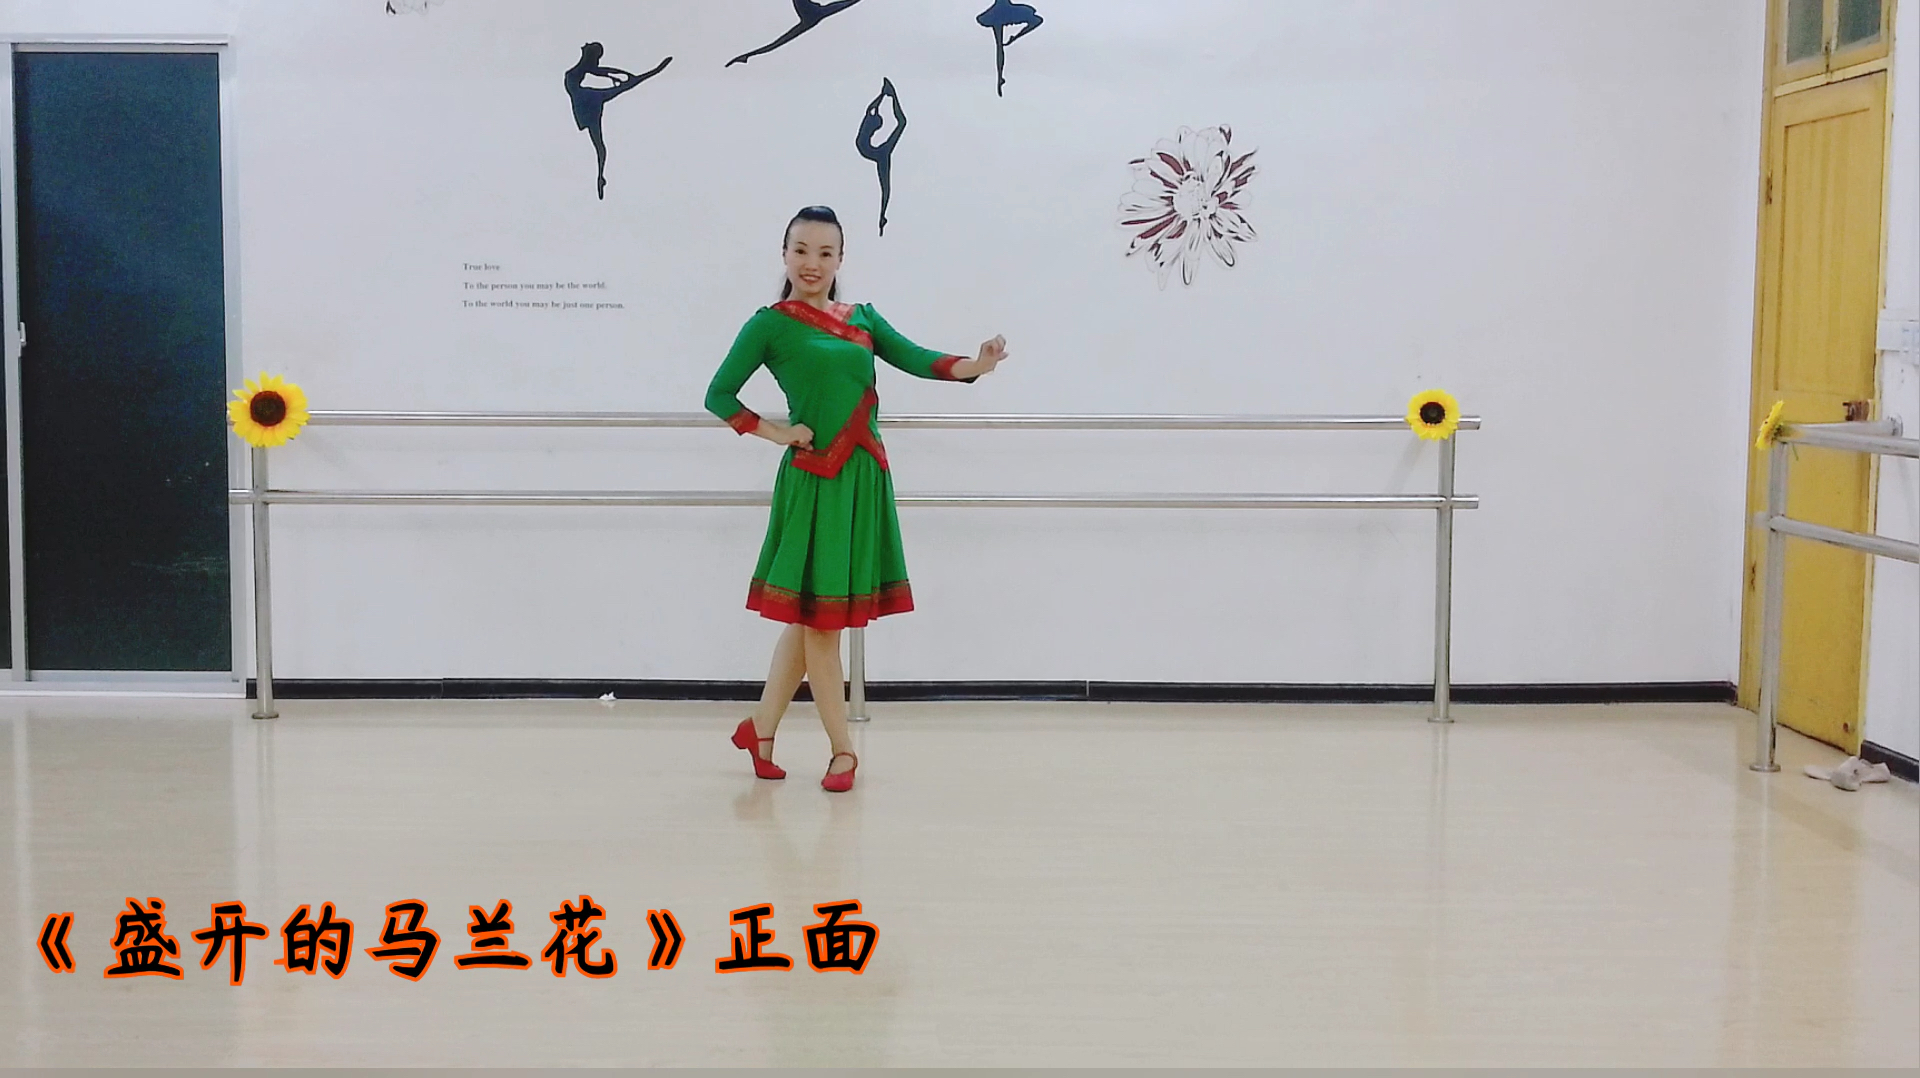 格格广场舞:好一朵《盛开的马兰花》好听又好看的蒙族舞蹈!